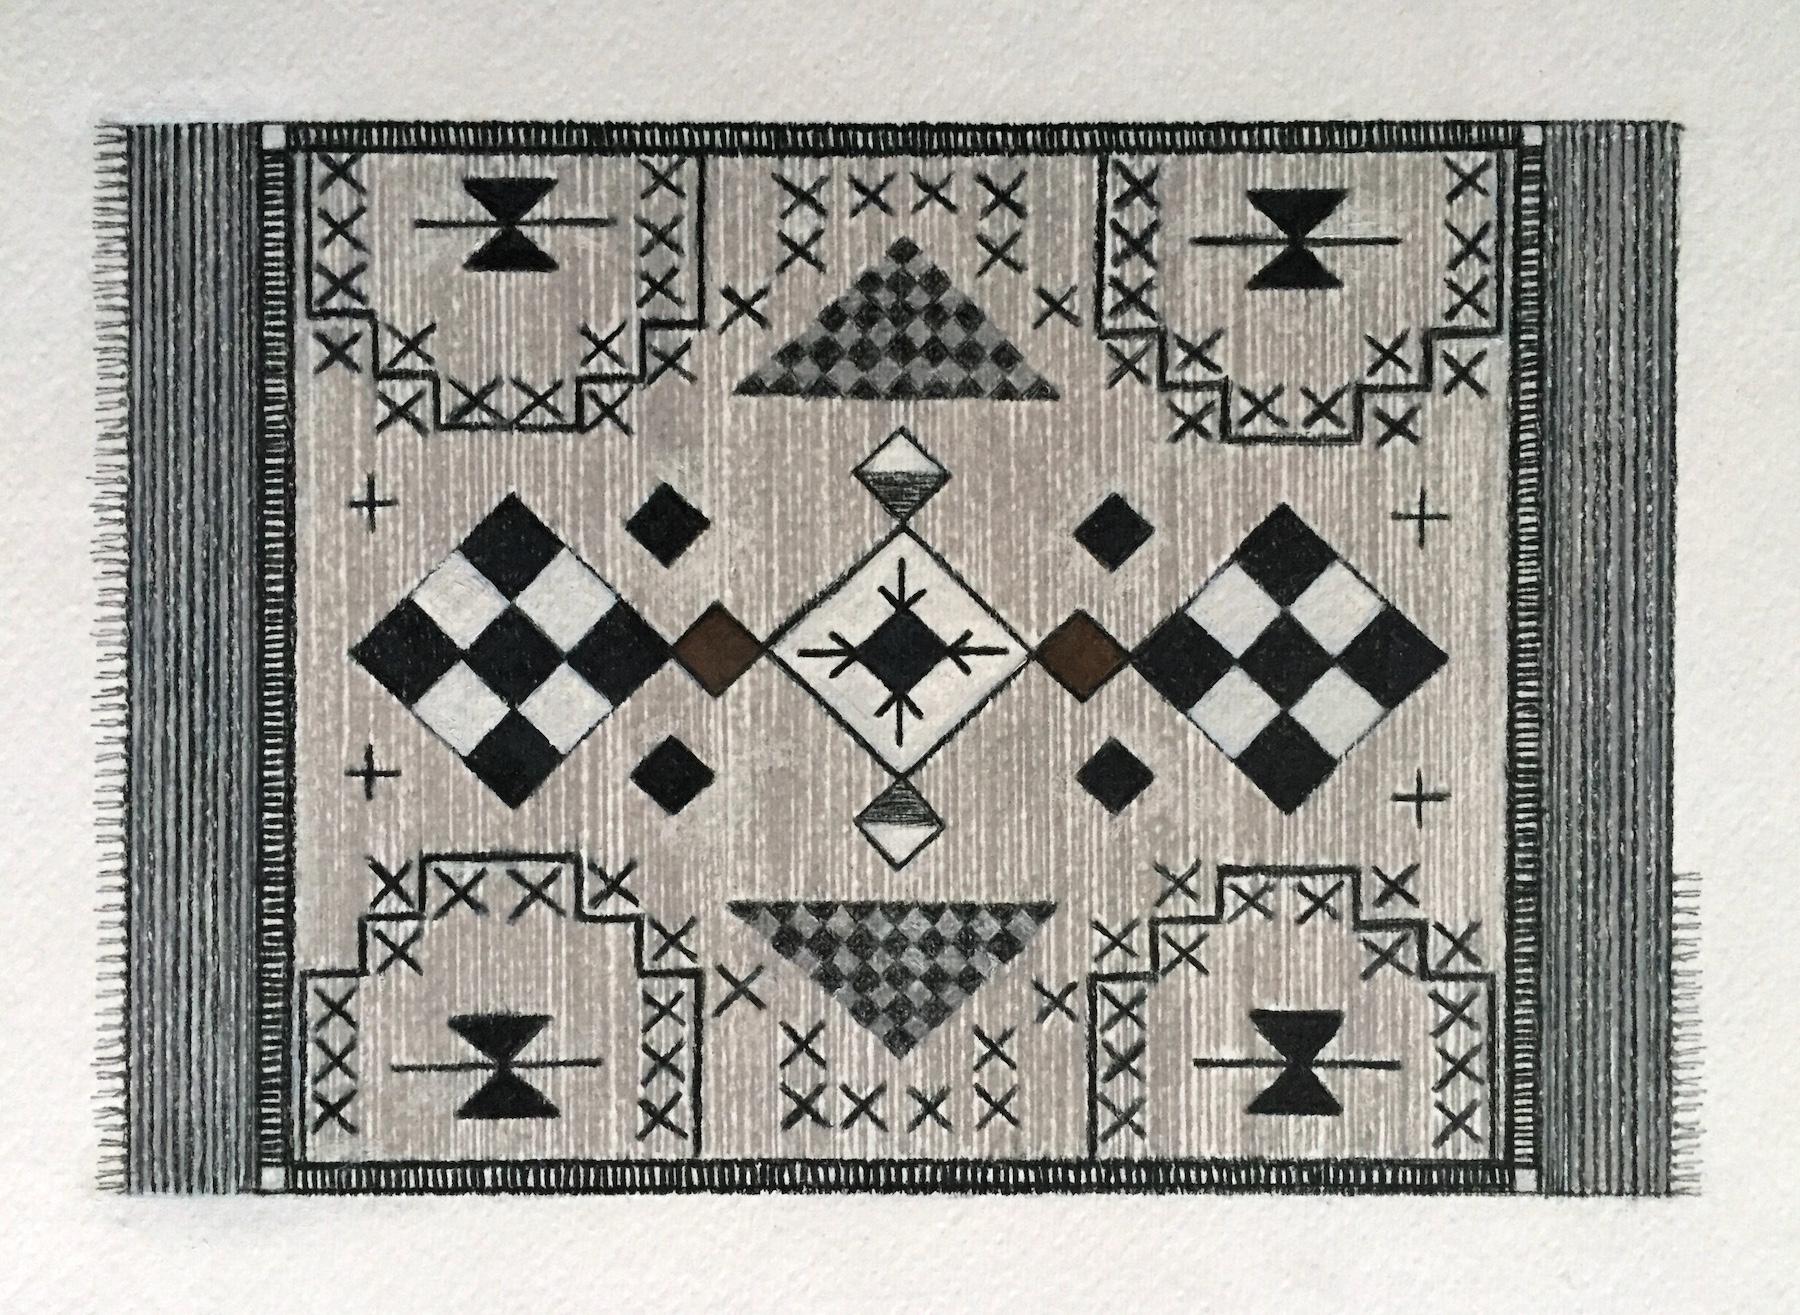 Magic Teppich Ride 3 (9"x12" Navajo-Teppich, geometrisches Muster, Schwarz, Weiß, Braun) – Art von Andrea Stajan-Ferkul